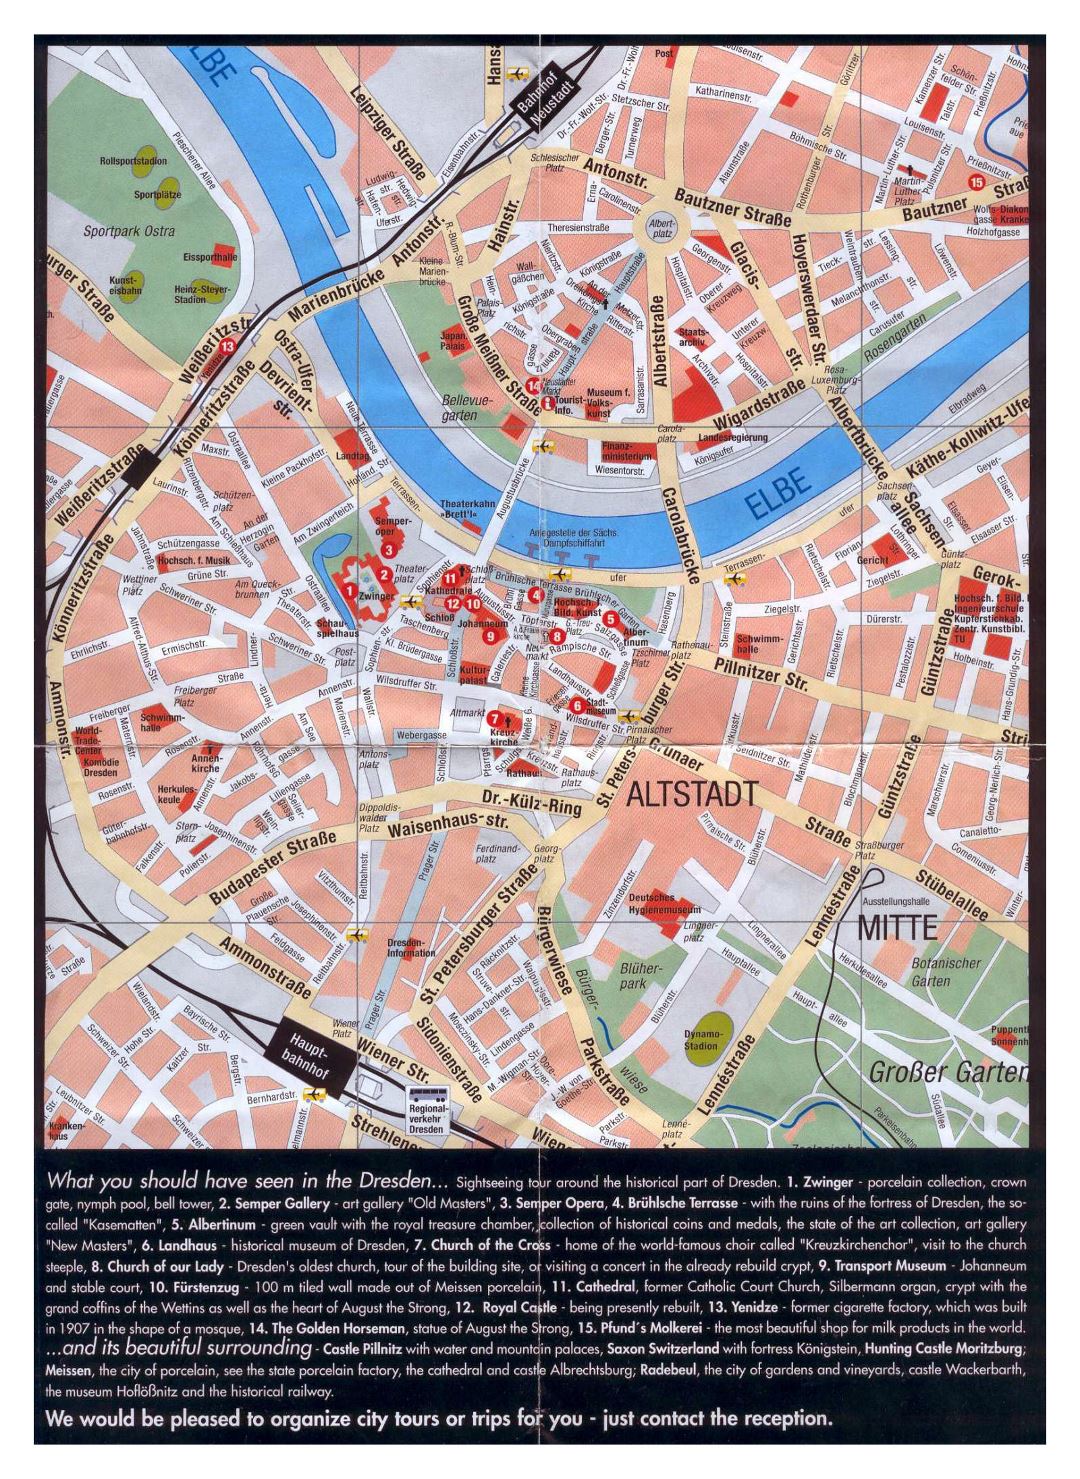 Большая детальная туристическая карта центральной части города Дрезден